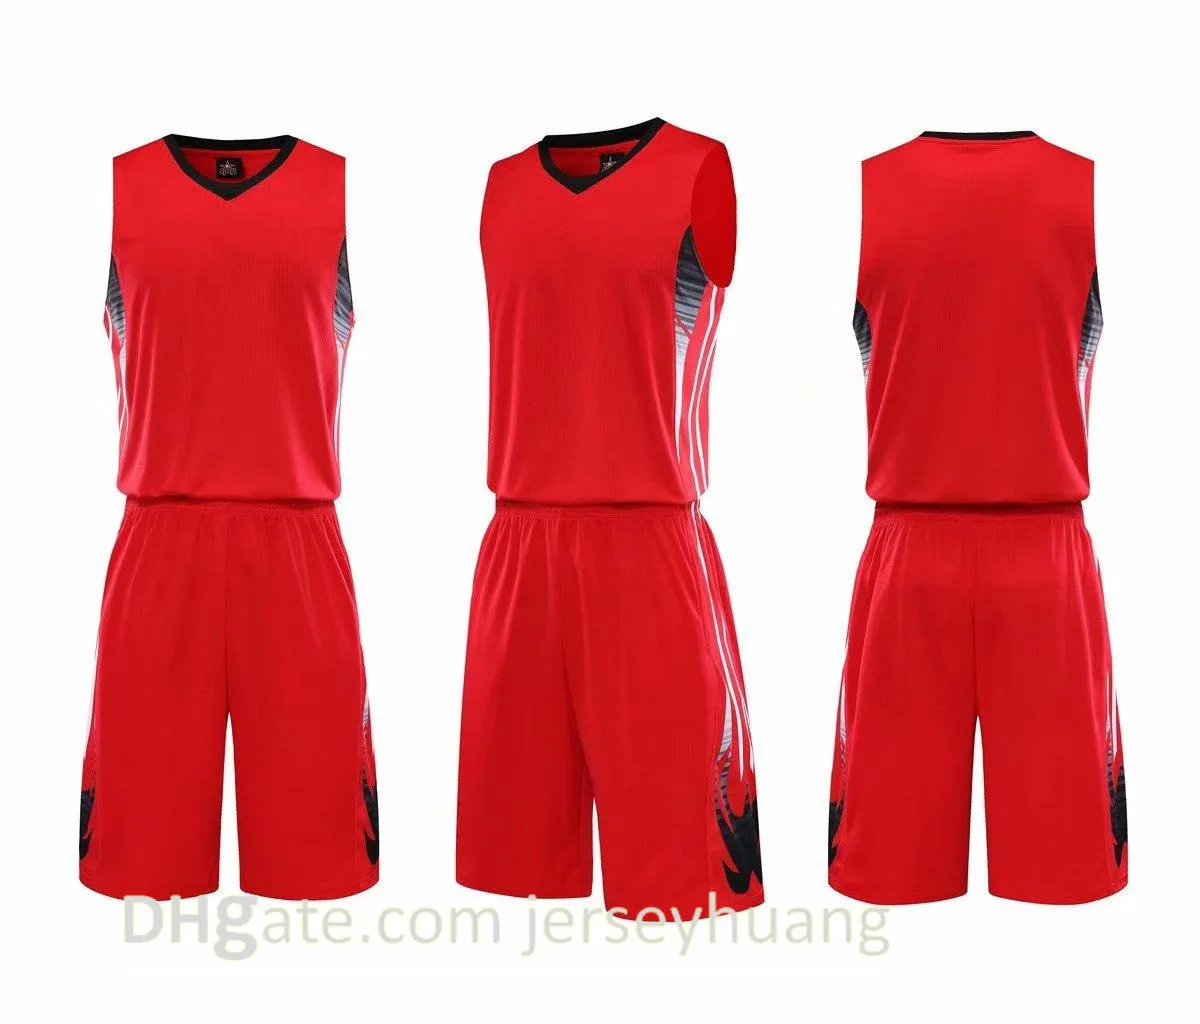 저렴한 남자 훈련 농구 훈련 유니폼을 가진 농구 세트 뒤집을 수있는 농구 유니폼, 멀리 봐 키트 스포츠 A33-9